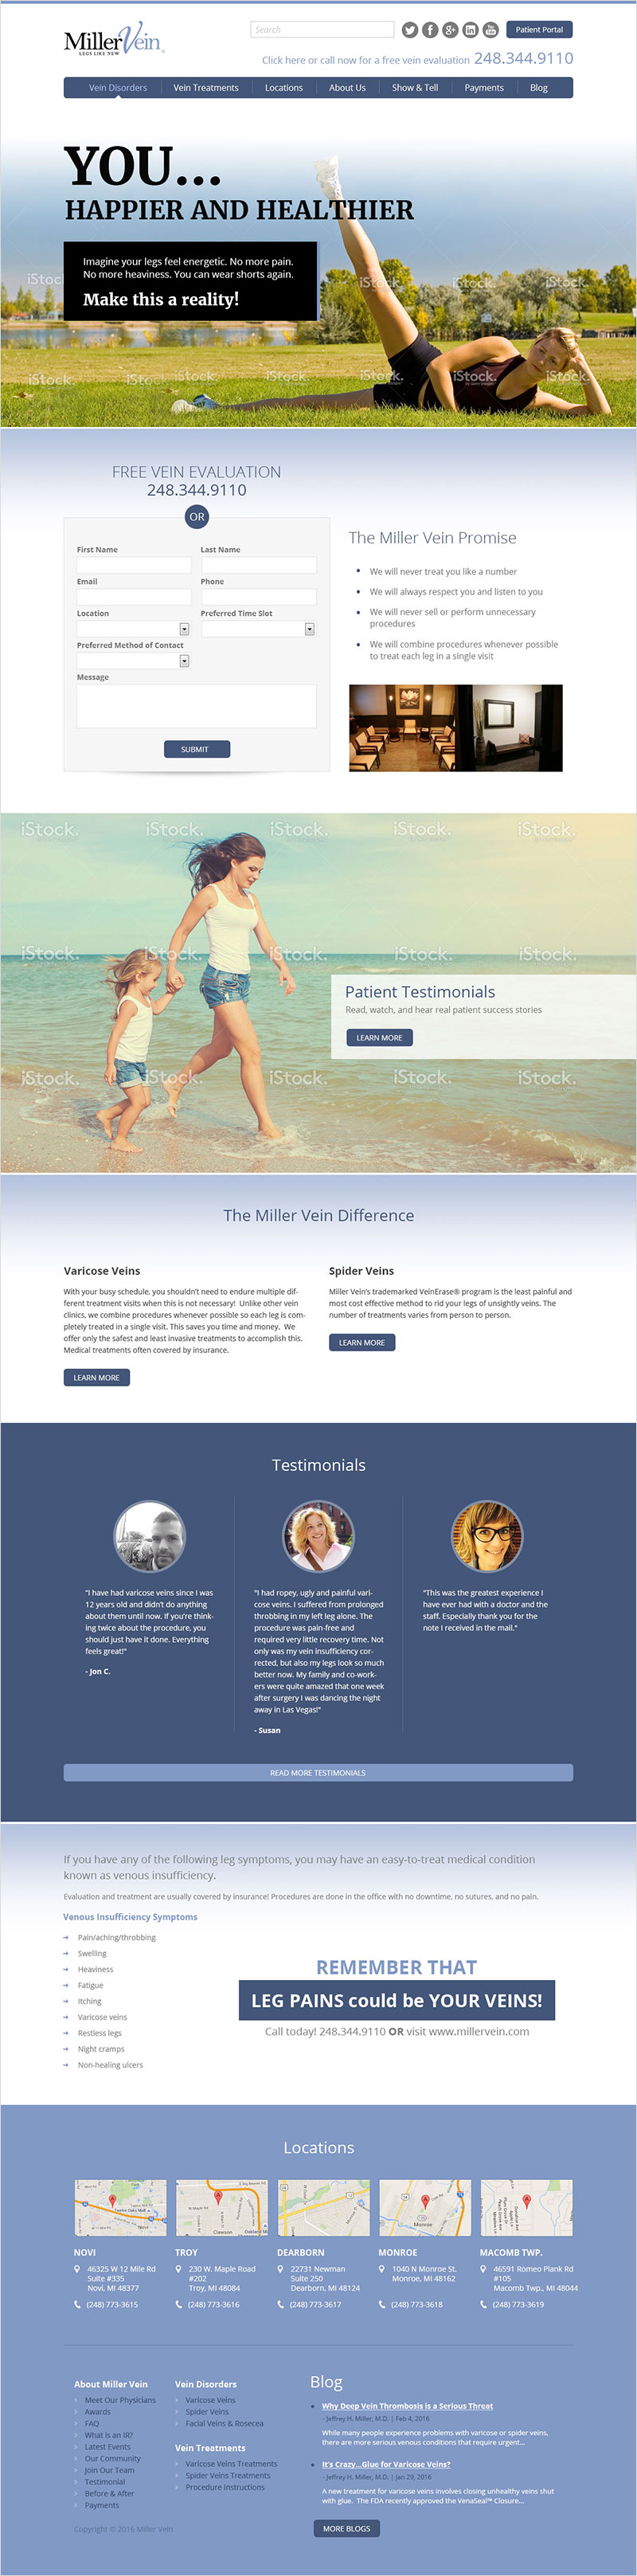 Miller Vein - Website Design